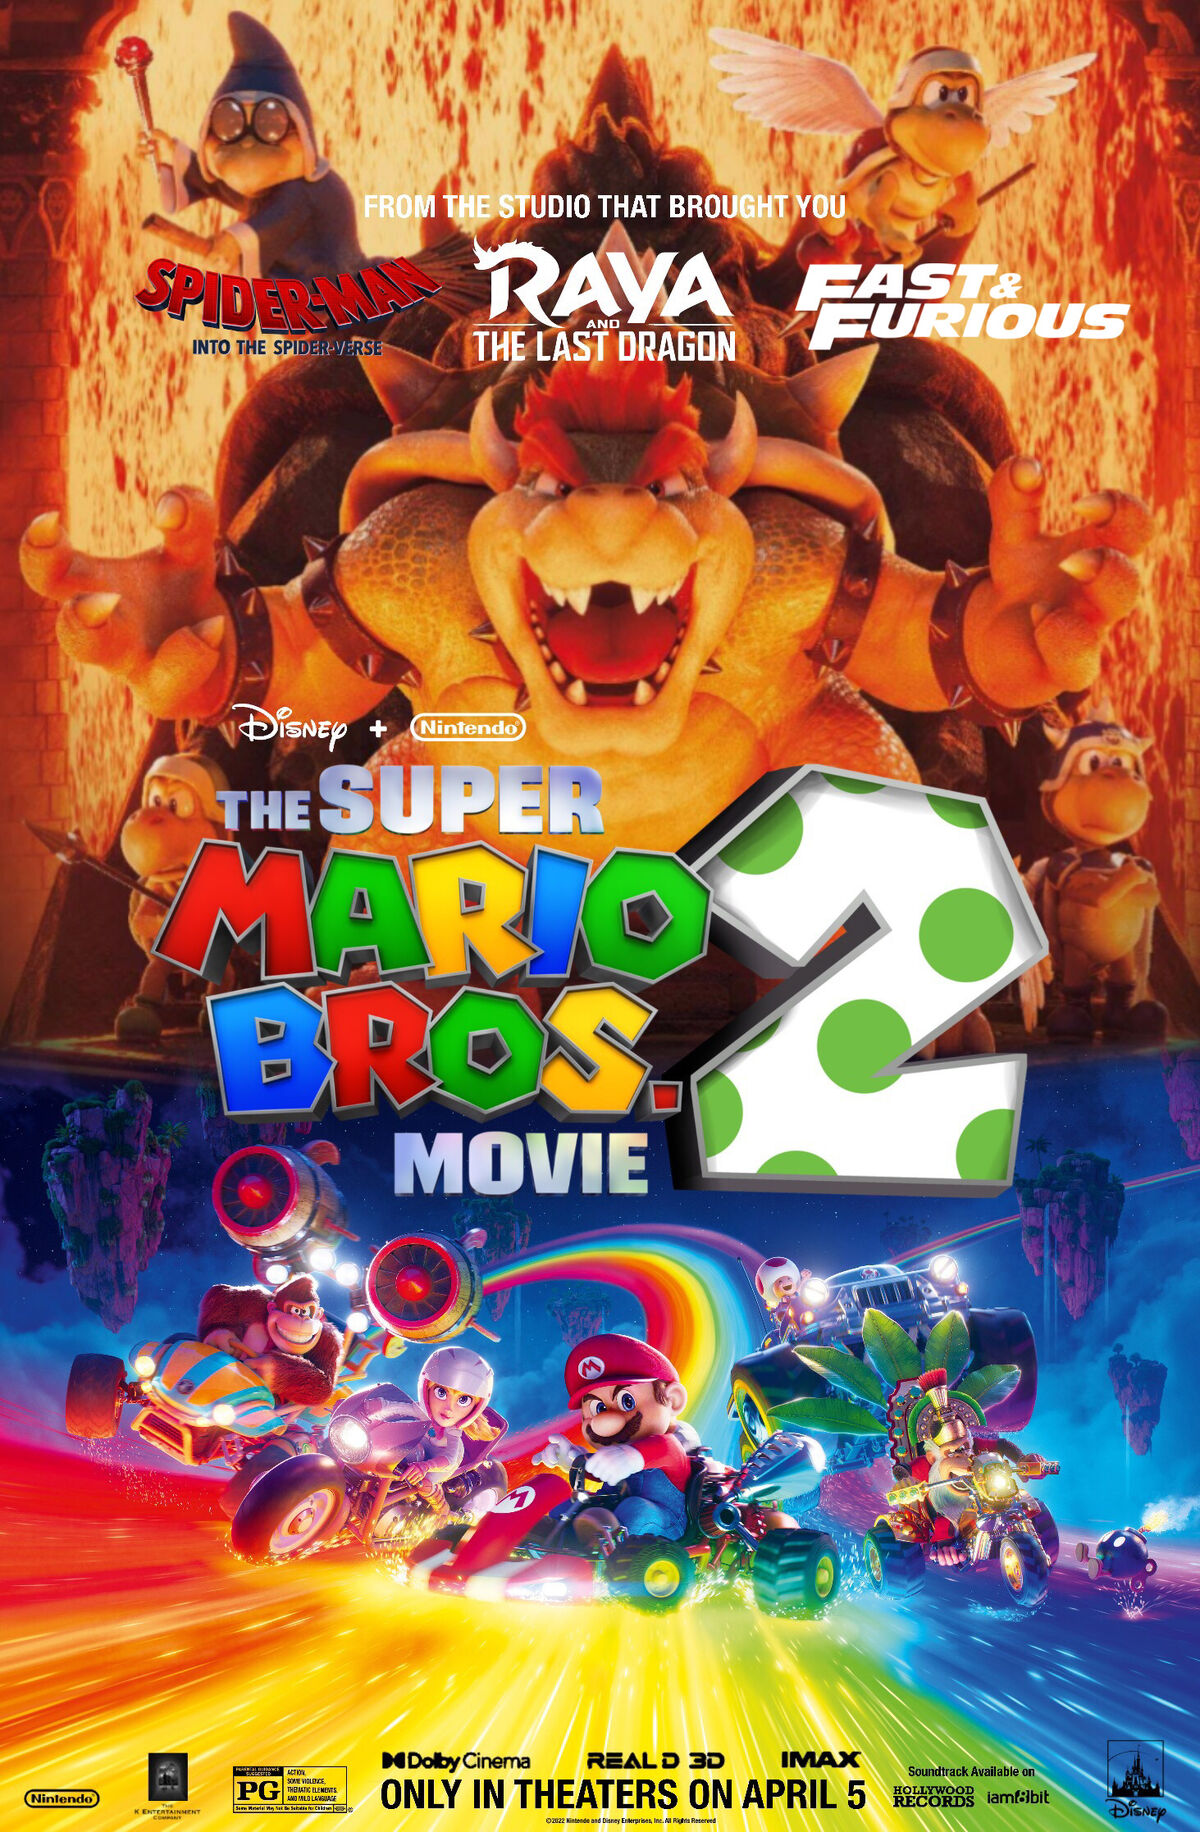 Mario Creator Shigeru Miyamoto Teases Future Nintendo Movies